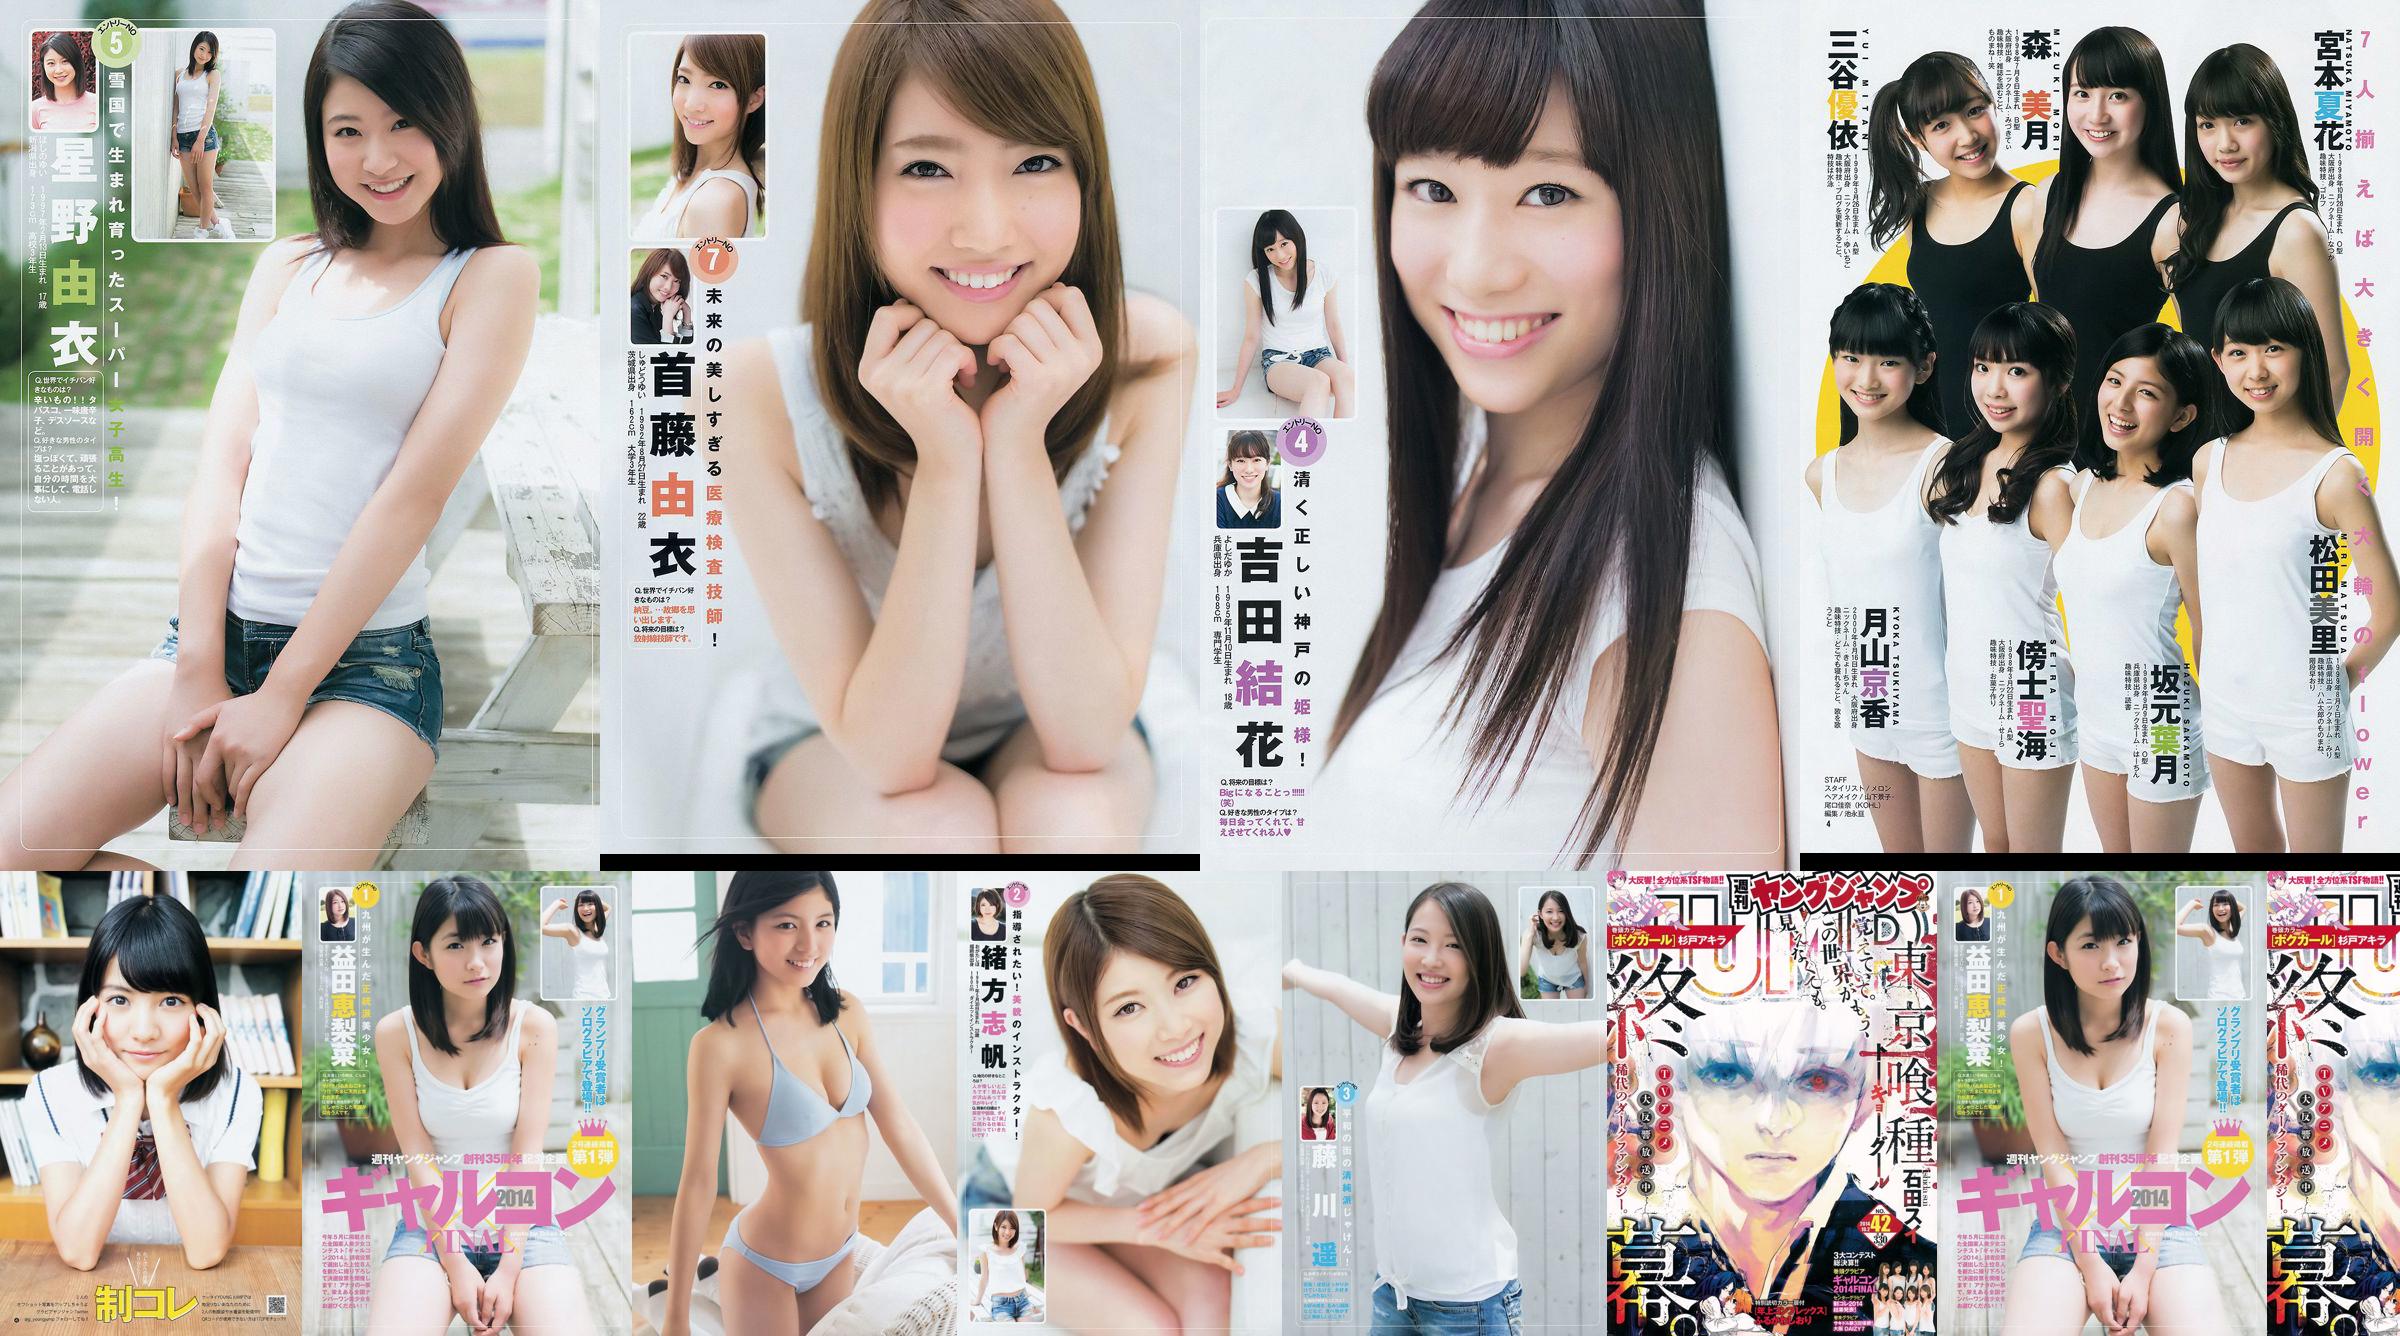 갸루콘 2014 제 이거 궁극 2014 오사카 DAIZY7 [Weekly Young Jump] 2014 년 No.42 사진 杂志 No.cbbaf4 페이지 13